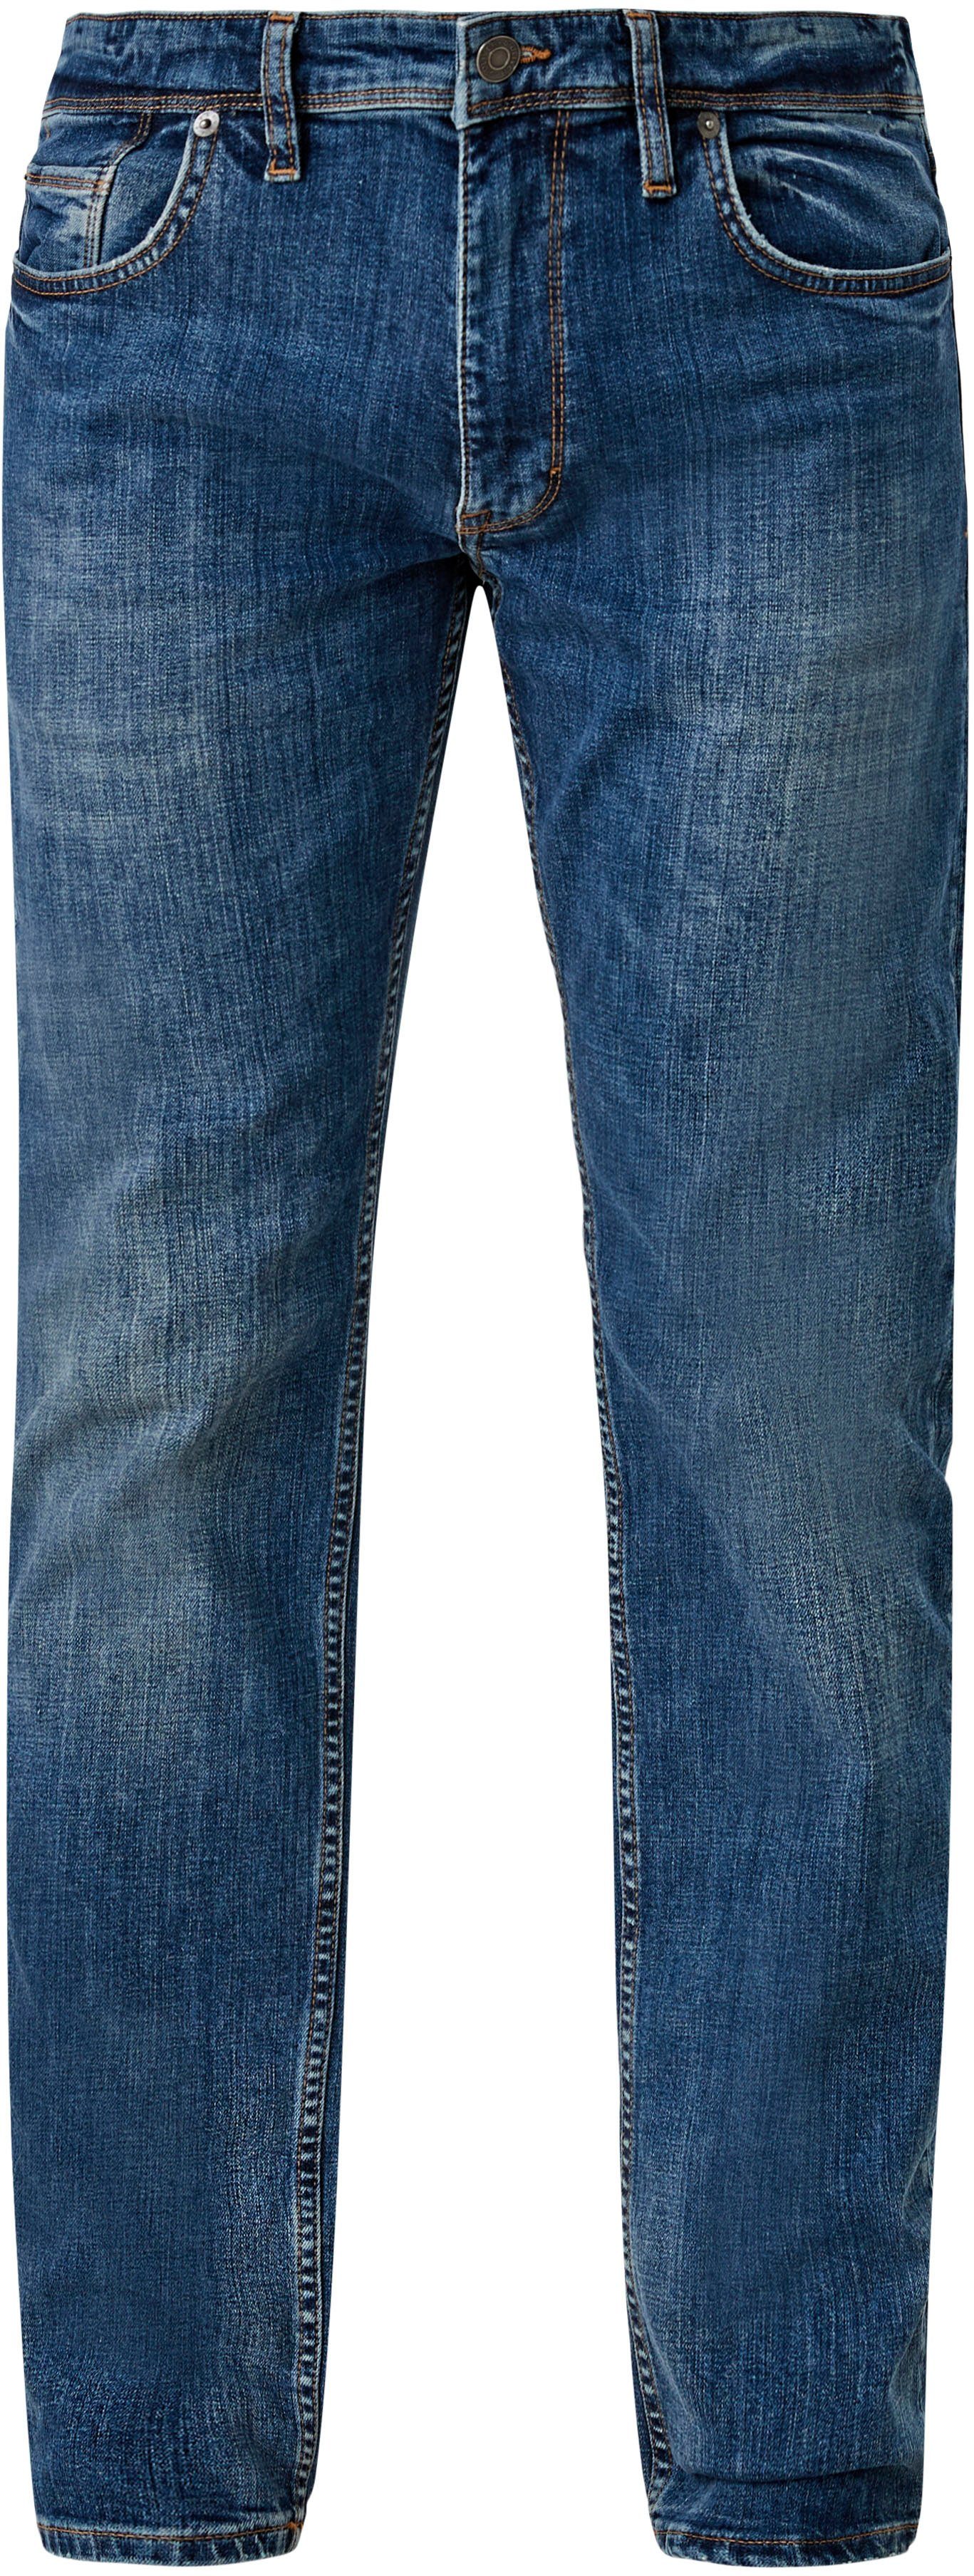 authentischer ozeanblau 5-Pocket-Jeans s.Oliver mit Waschung